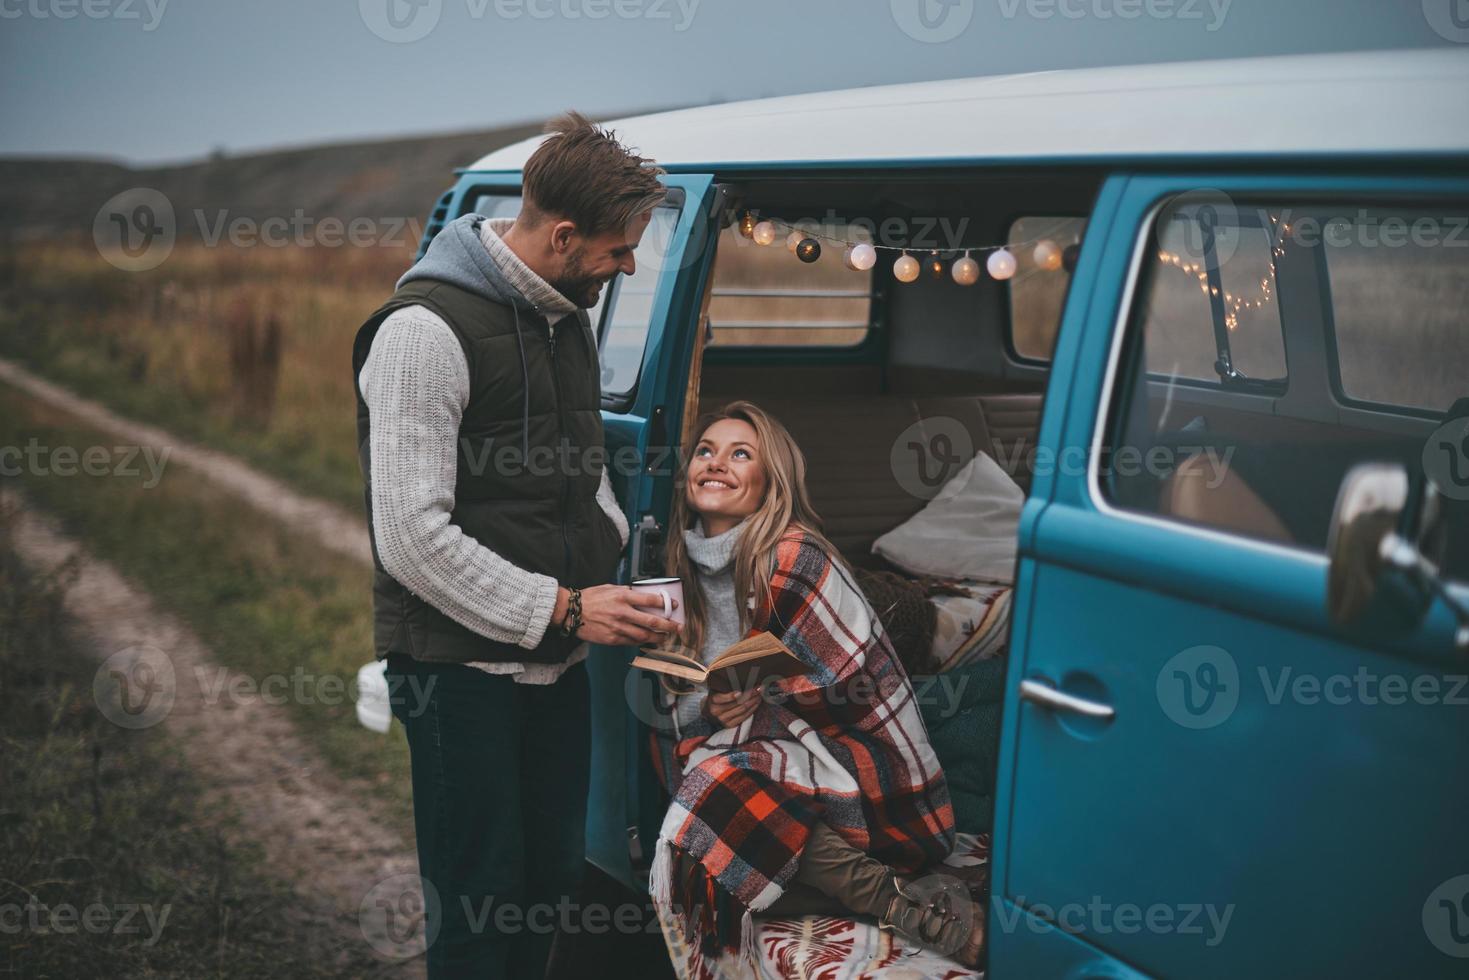 simple alegría de estar enamorado. un joven apuesto que le da una taza a su novia mientras disfruta de su viaje por carretera foto